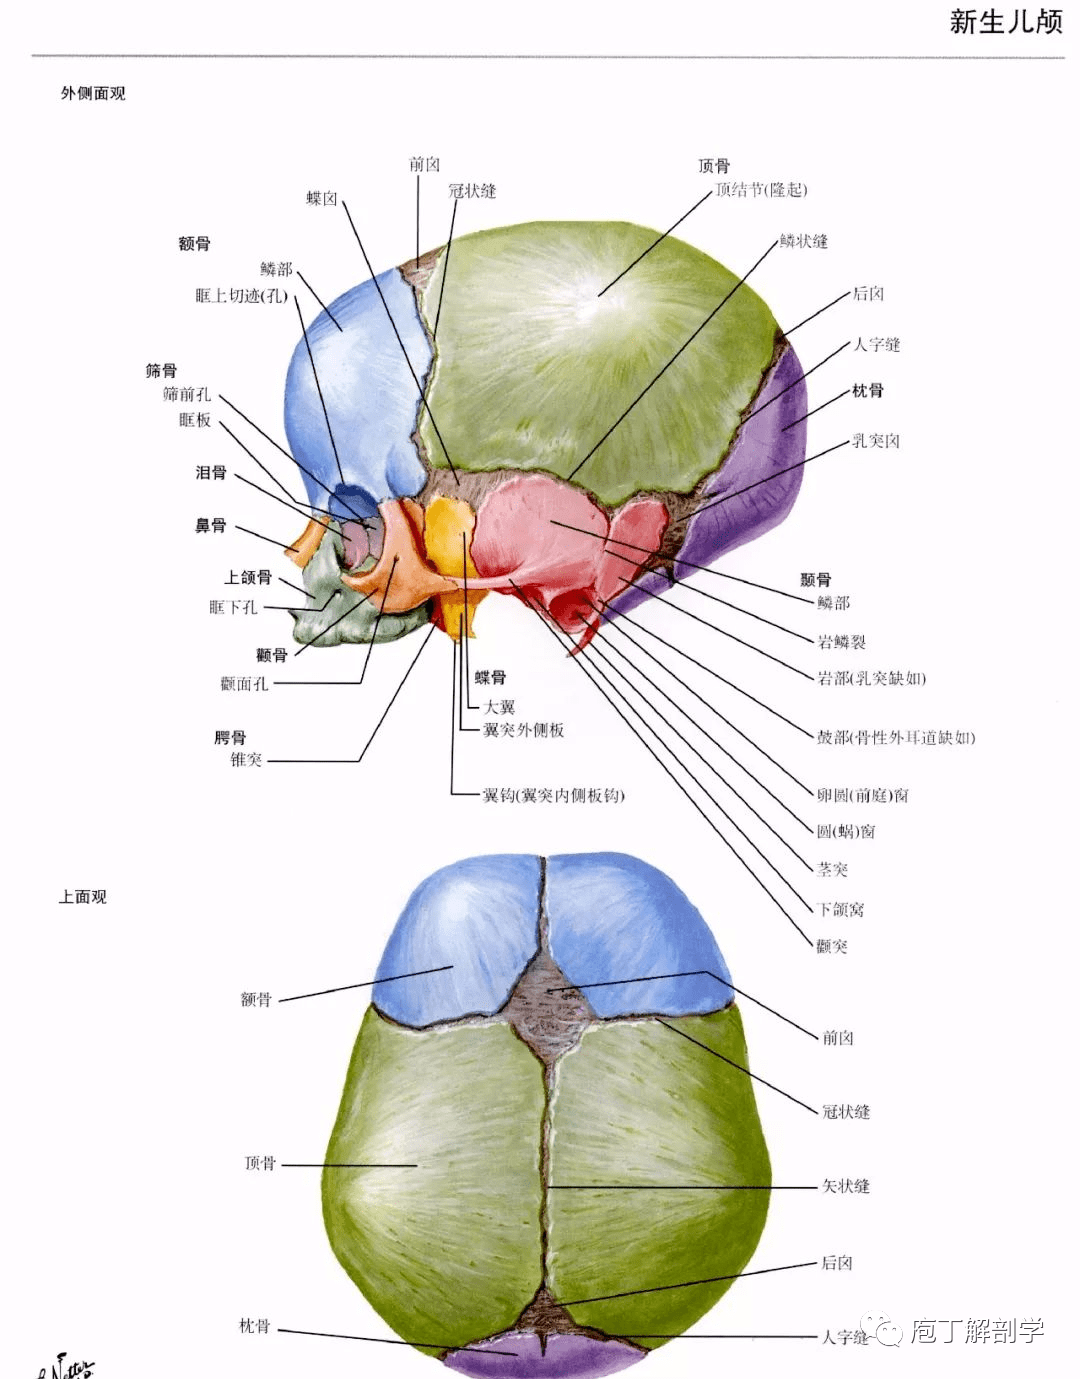 位置 孔 穿过结构 颅前窝 筛孔 嗅神经 视神经管 视神经 眼动脉 颅中